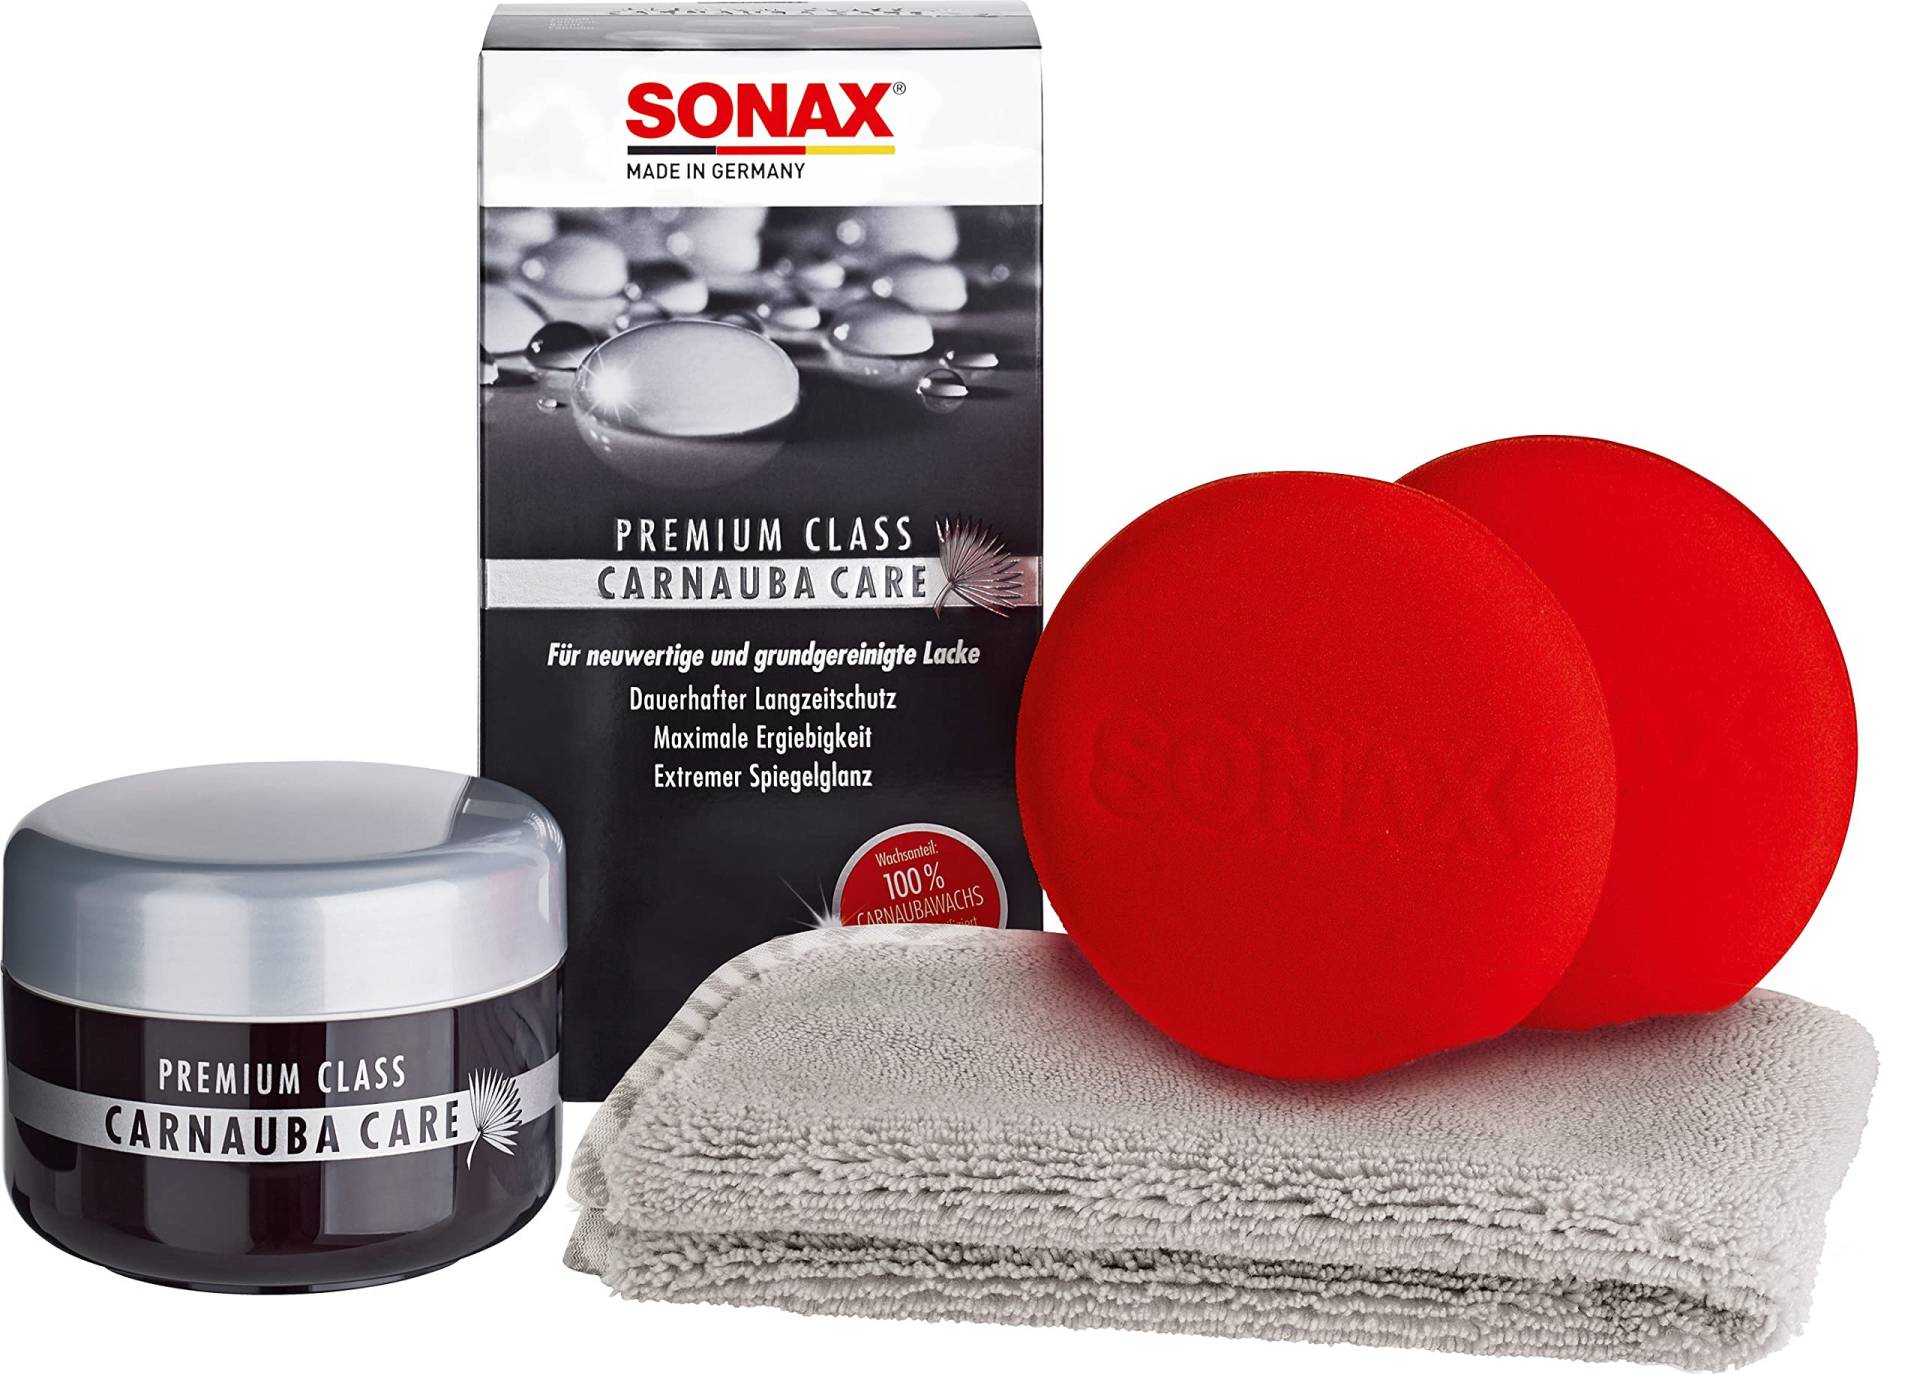 SONAX PREMIUM CLASS Carnauba Care (200 ml) Hartwachs für alle neuen und grundgereinigten Lacke inkl. 2x Schwamm und 1x MicrofaserTuch | Art-Nr. 02112000 von SONAX